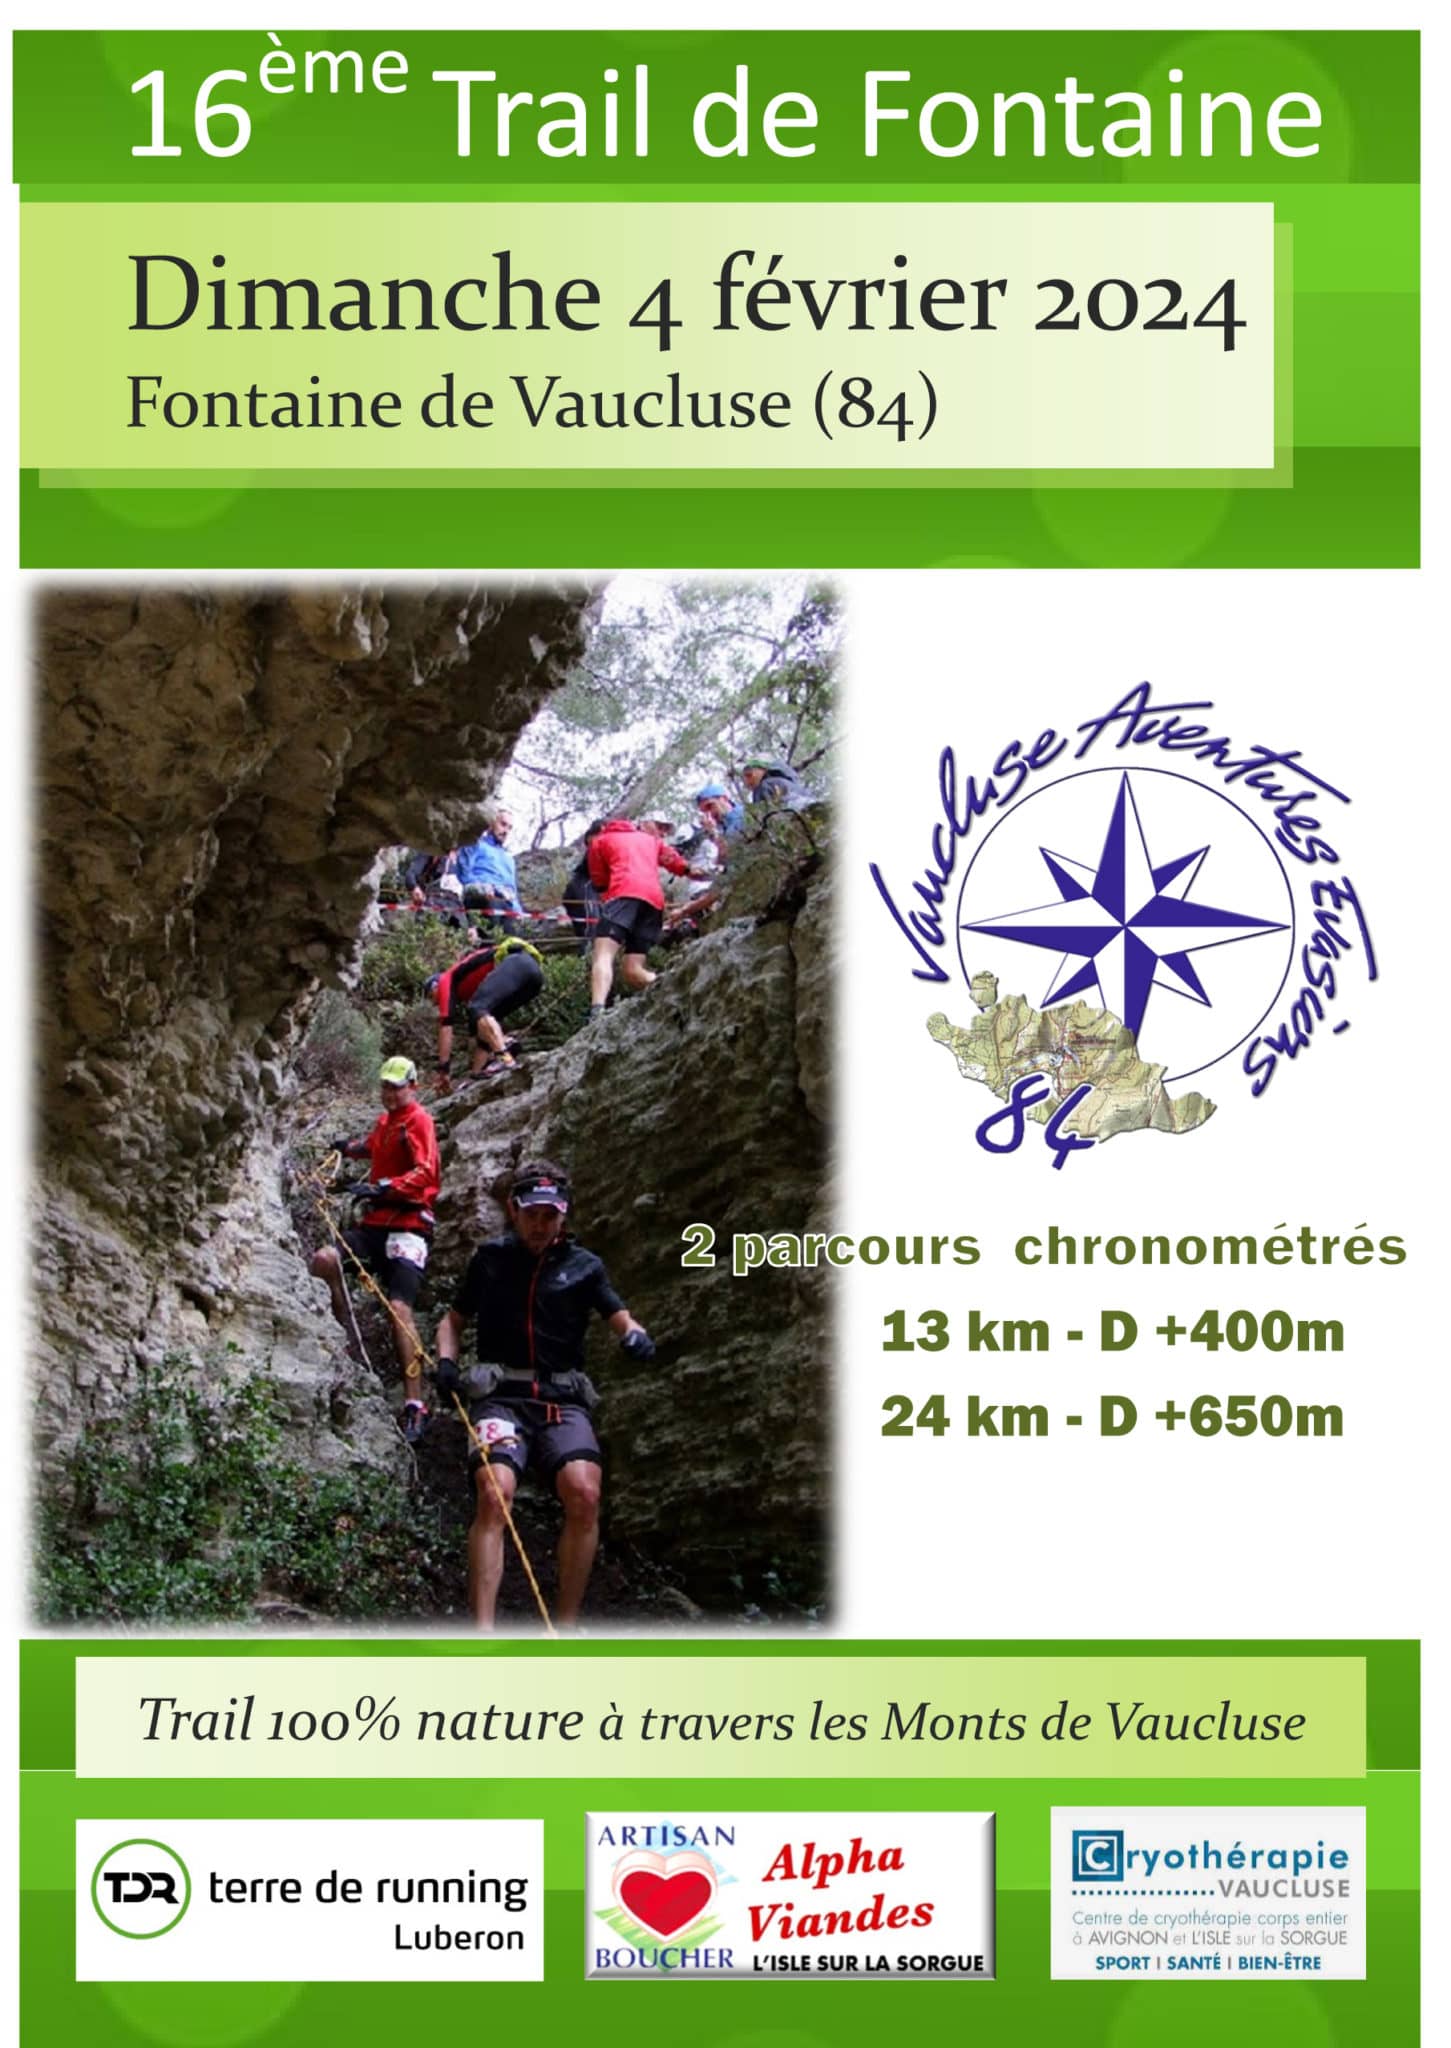 Affiche Trail de Fontaine de Vaucluse 2024